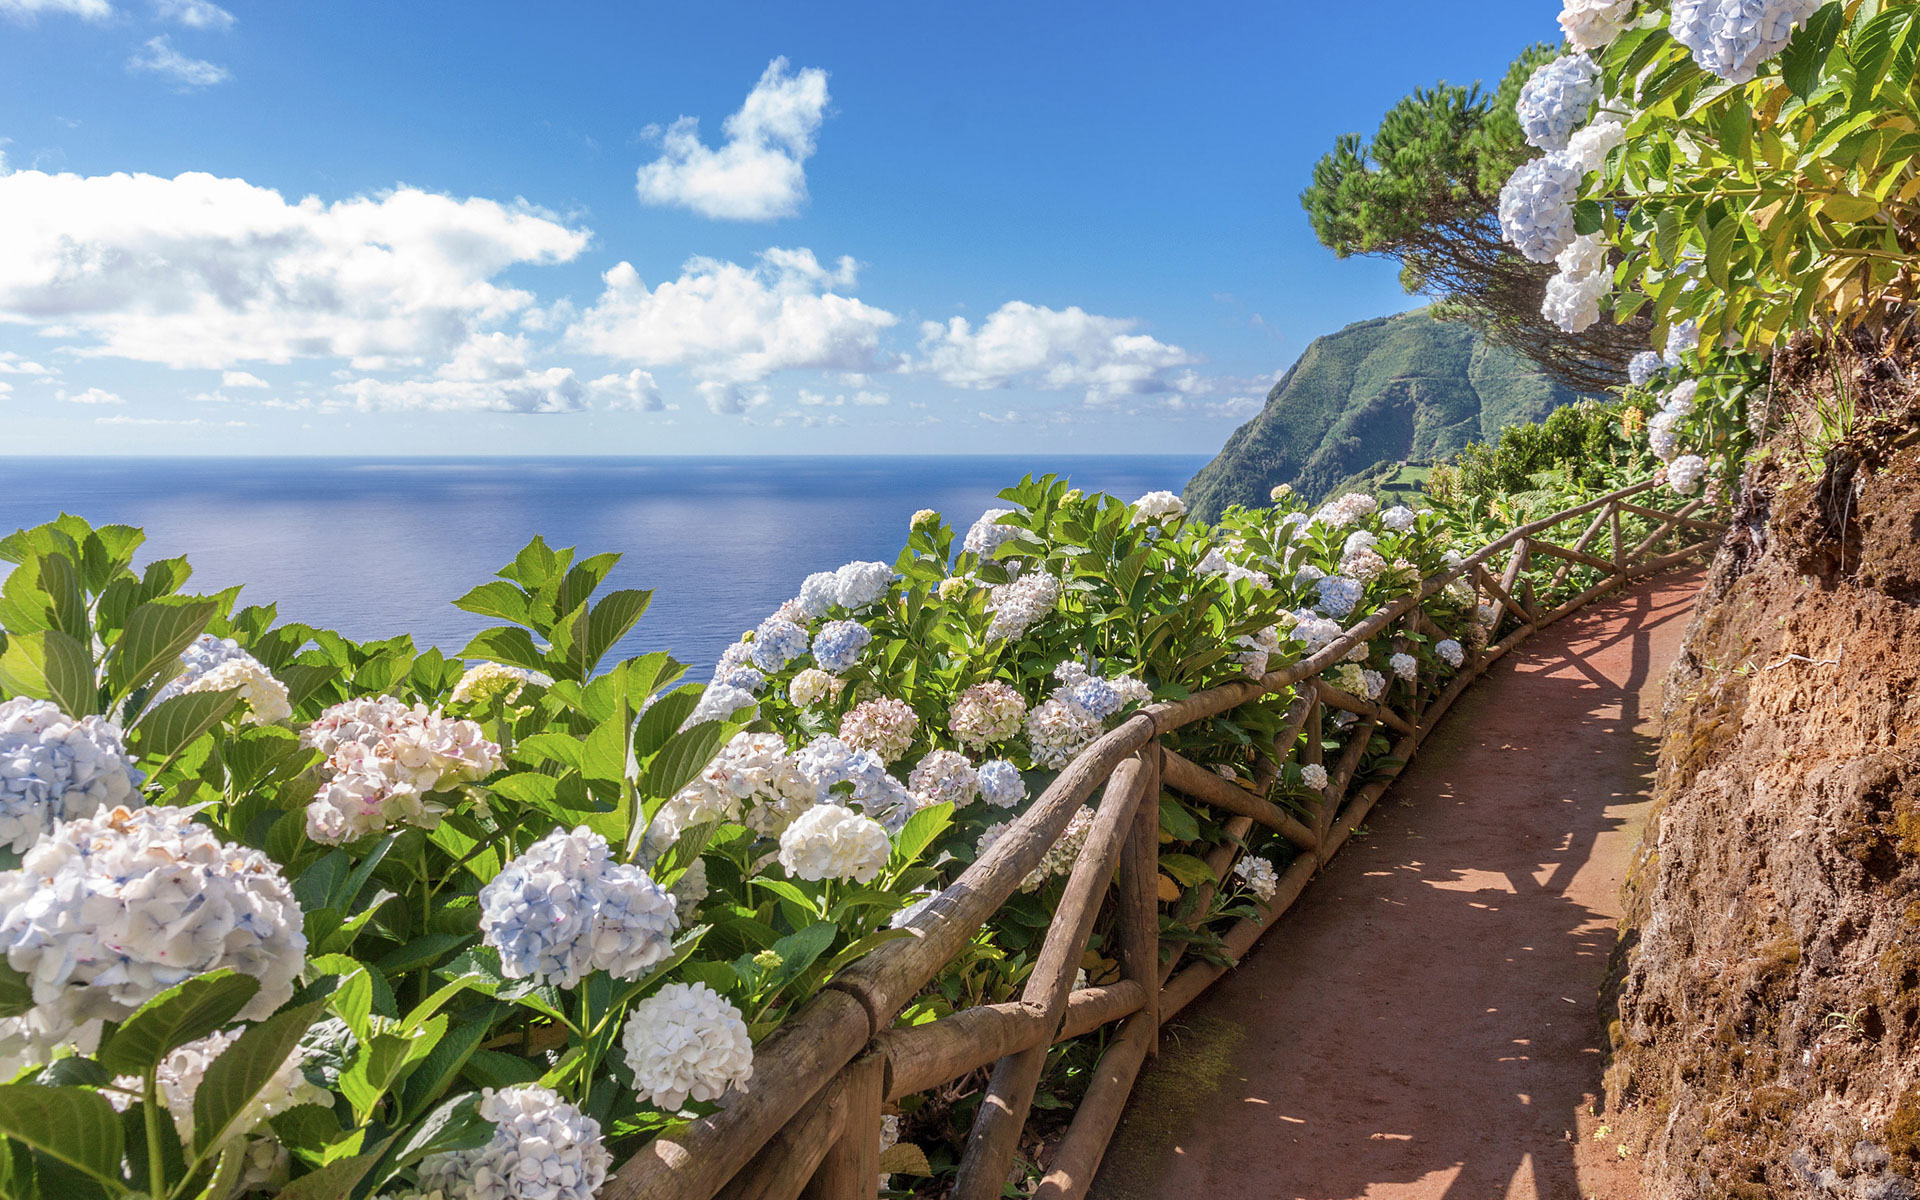 Wandelen met Adagio in Madeira, Kaapverdië of de Azoren